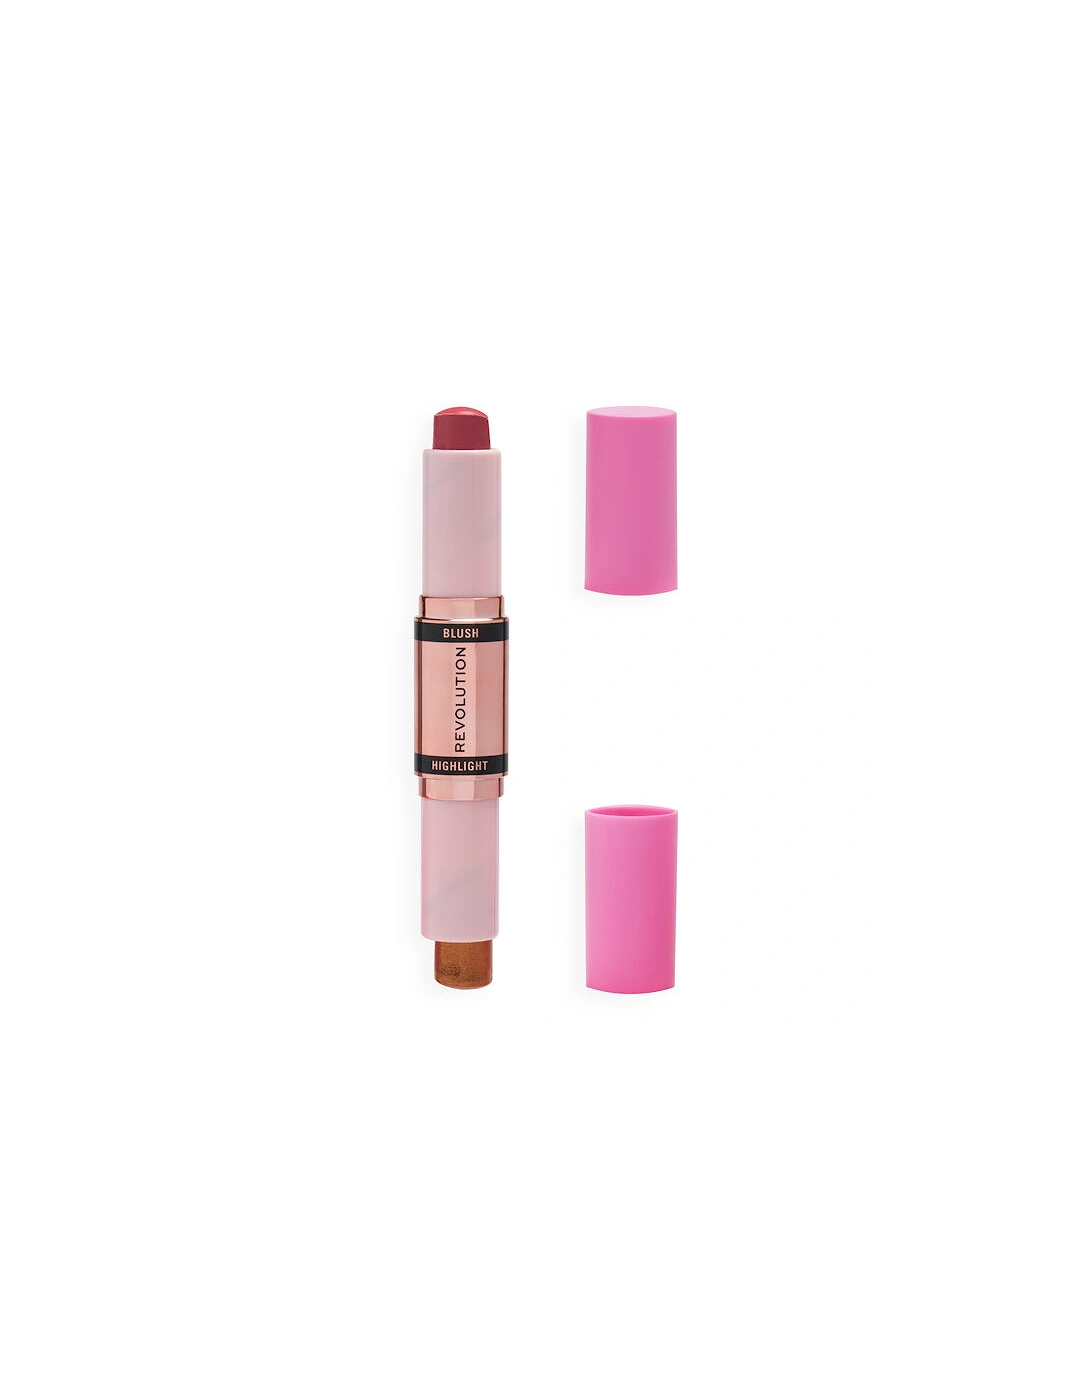 Makeup Blush & Highlight Stick Flushing Pink, 2 of 1